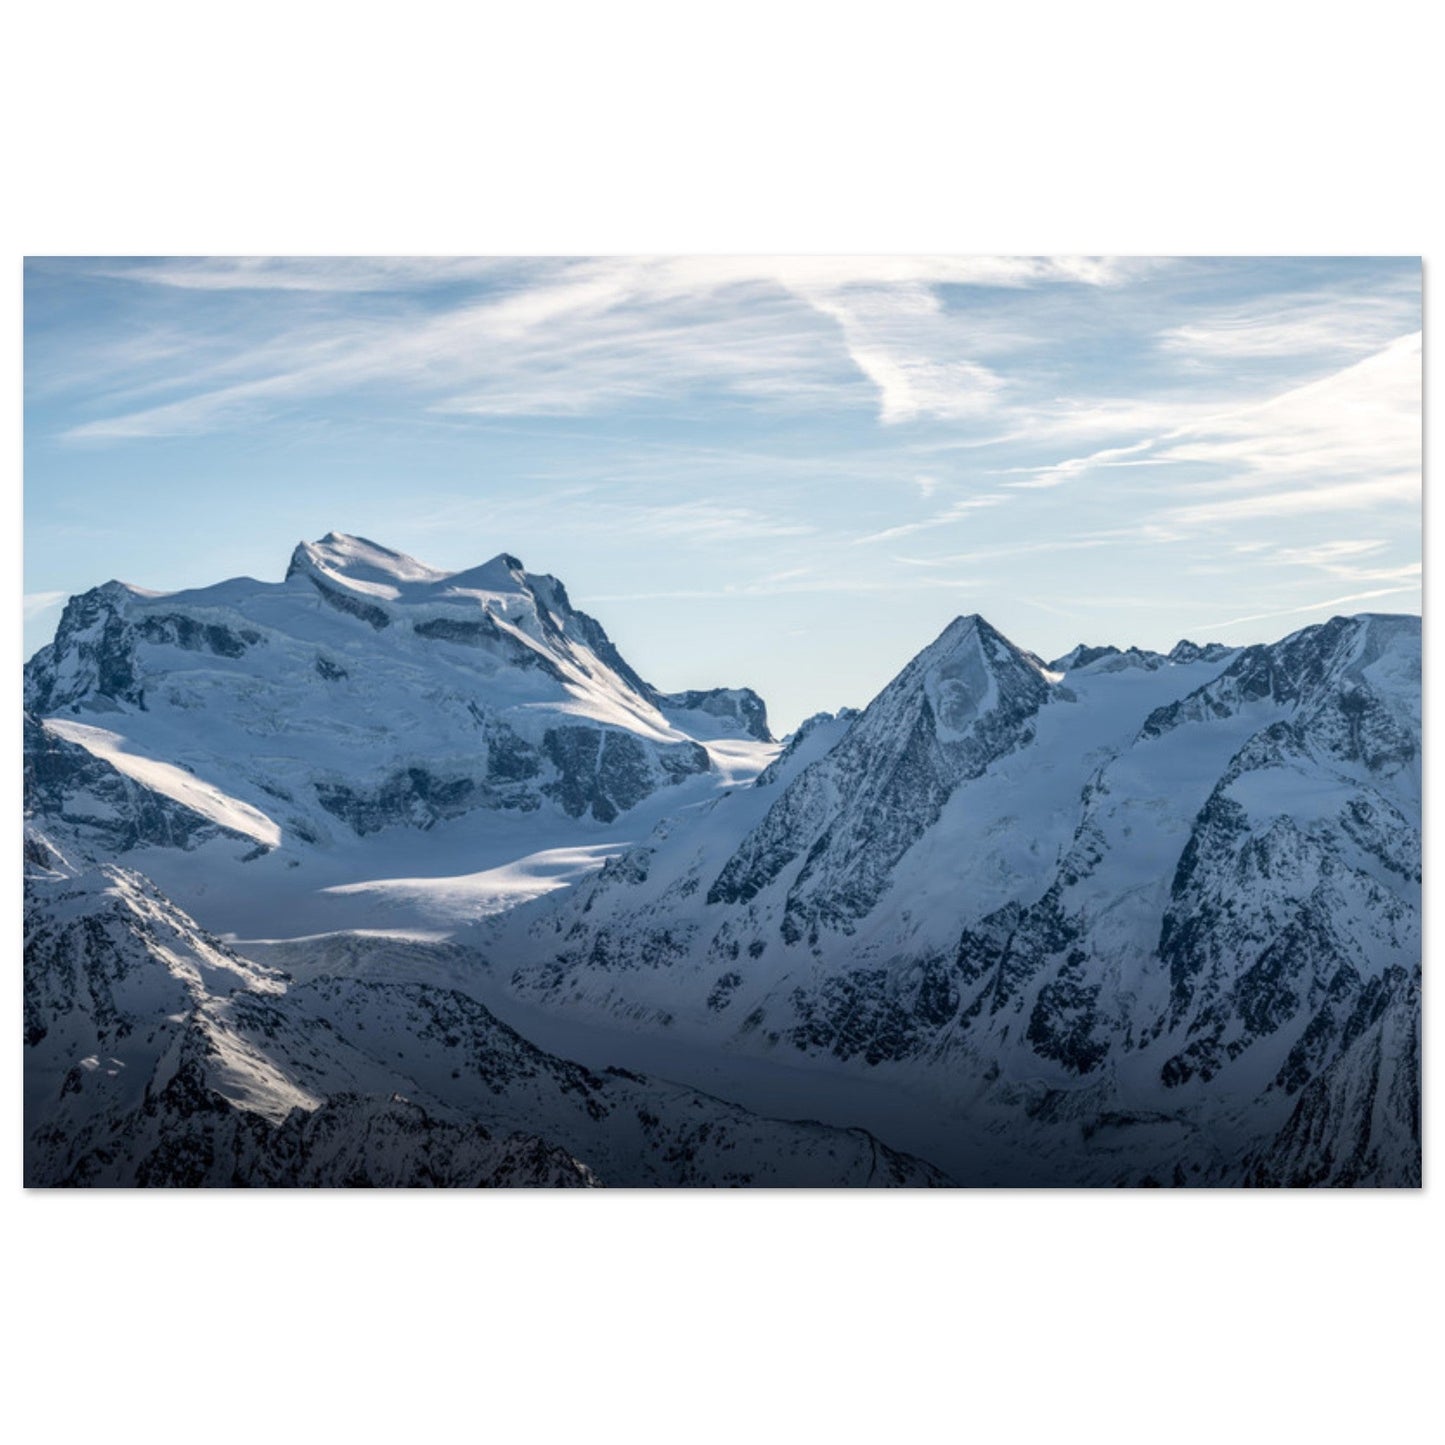 Vente Photo du Grand Combin, Valais, Alpes suisses - Tableau photo alu montagne